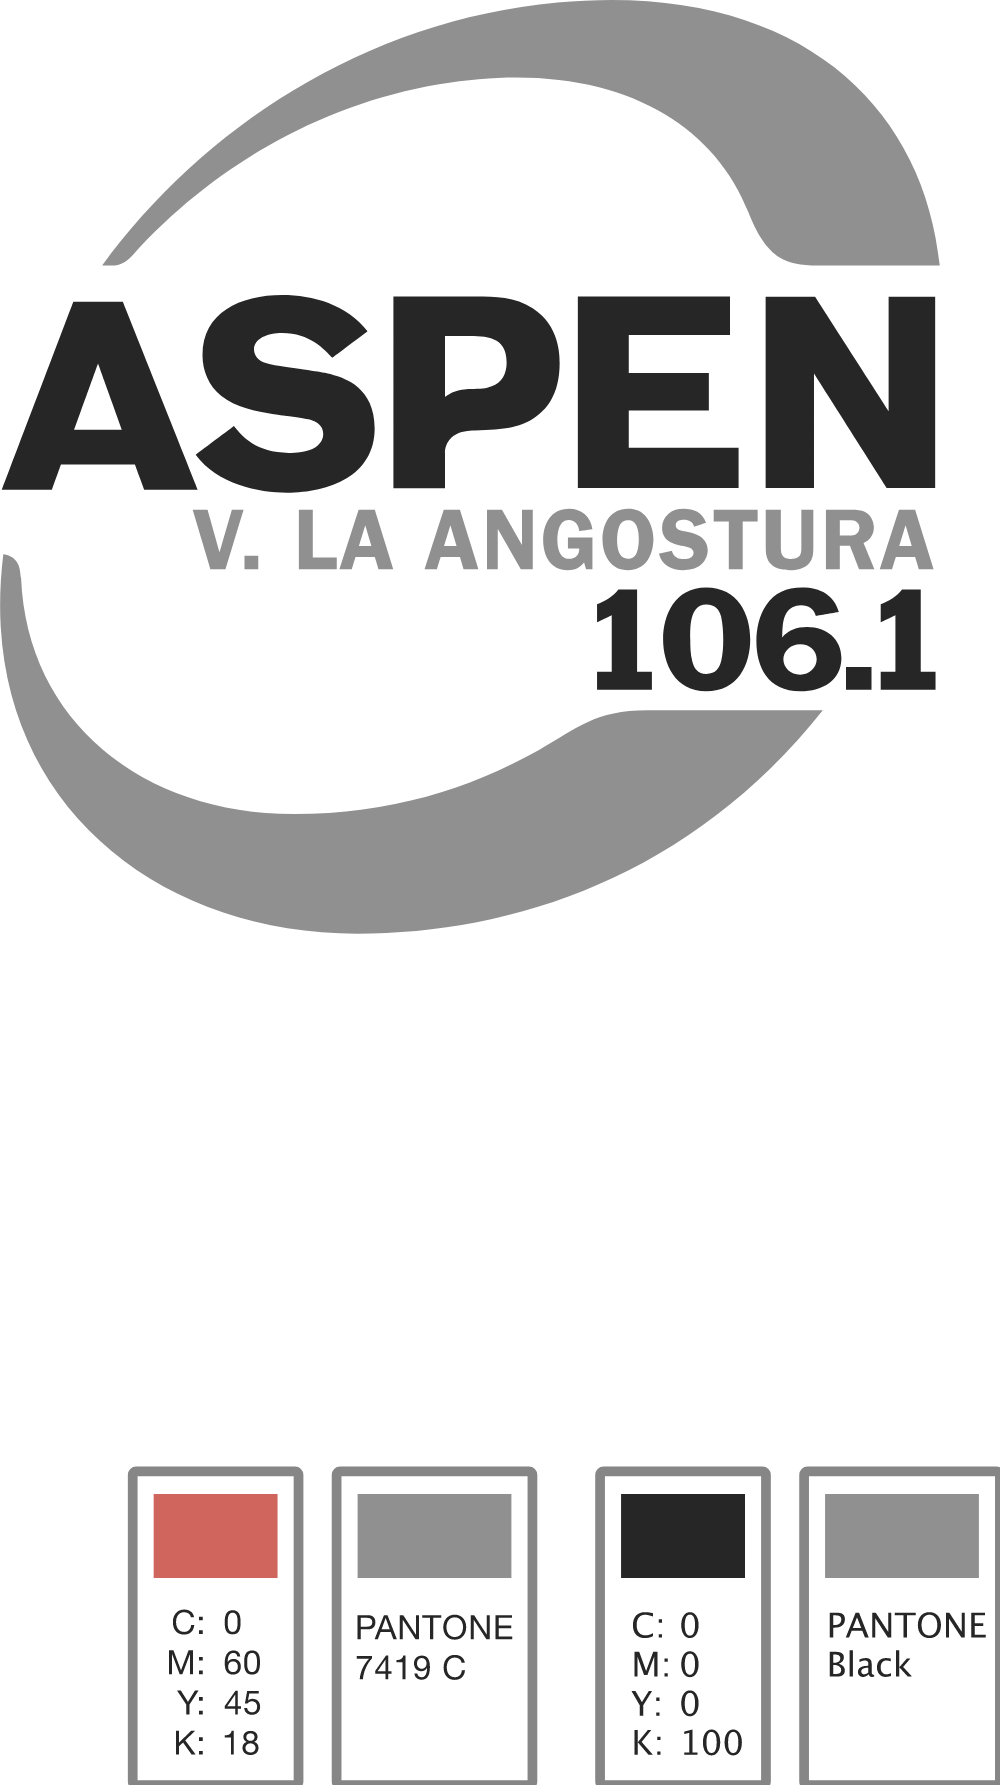 Aspen Villa La Angostura Logo Logos